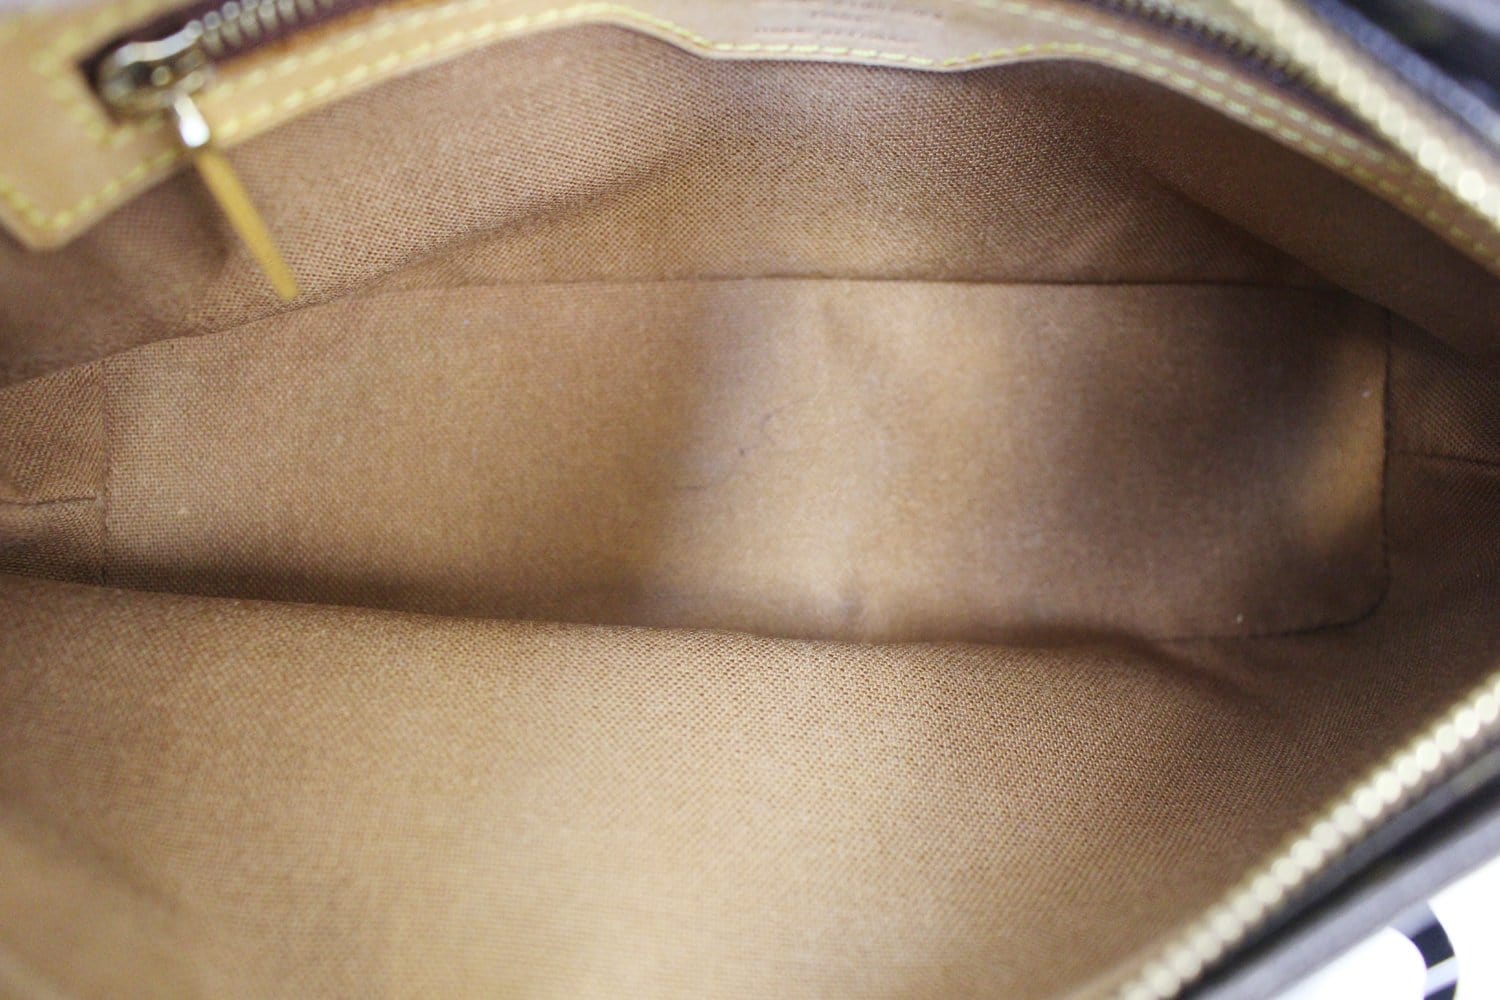 Louis Vuitton 2002 Pre-Owned Trotteur Shoulder Bag - Brown for Women